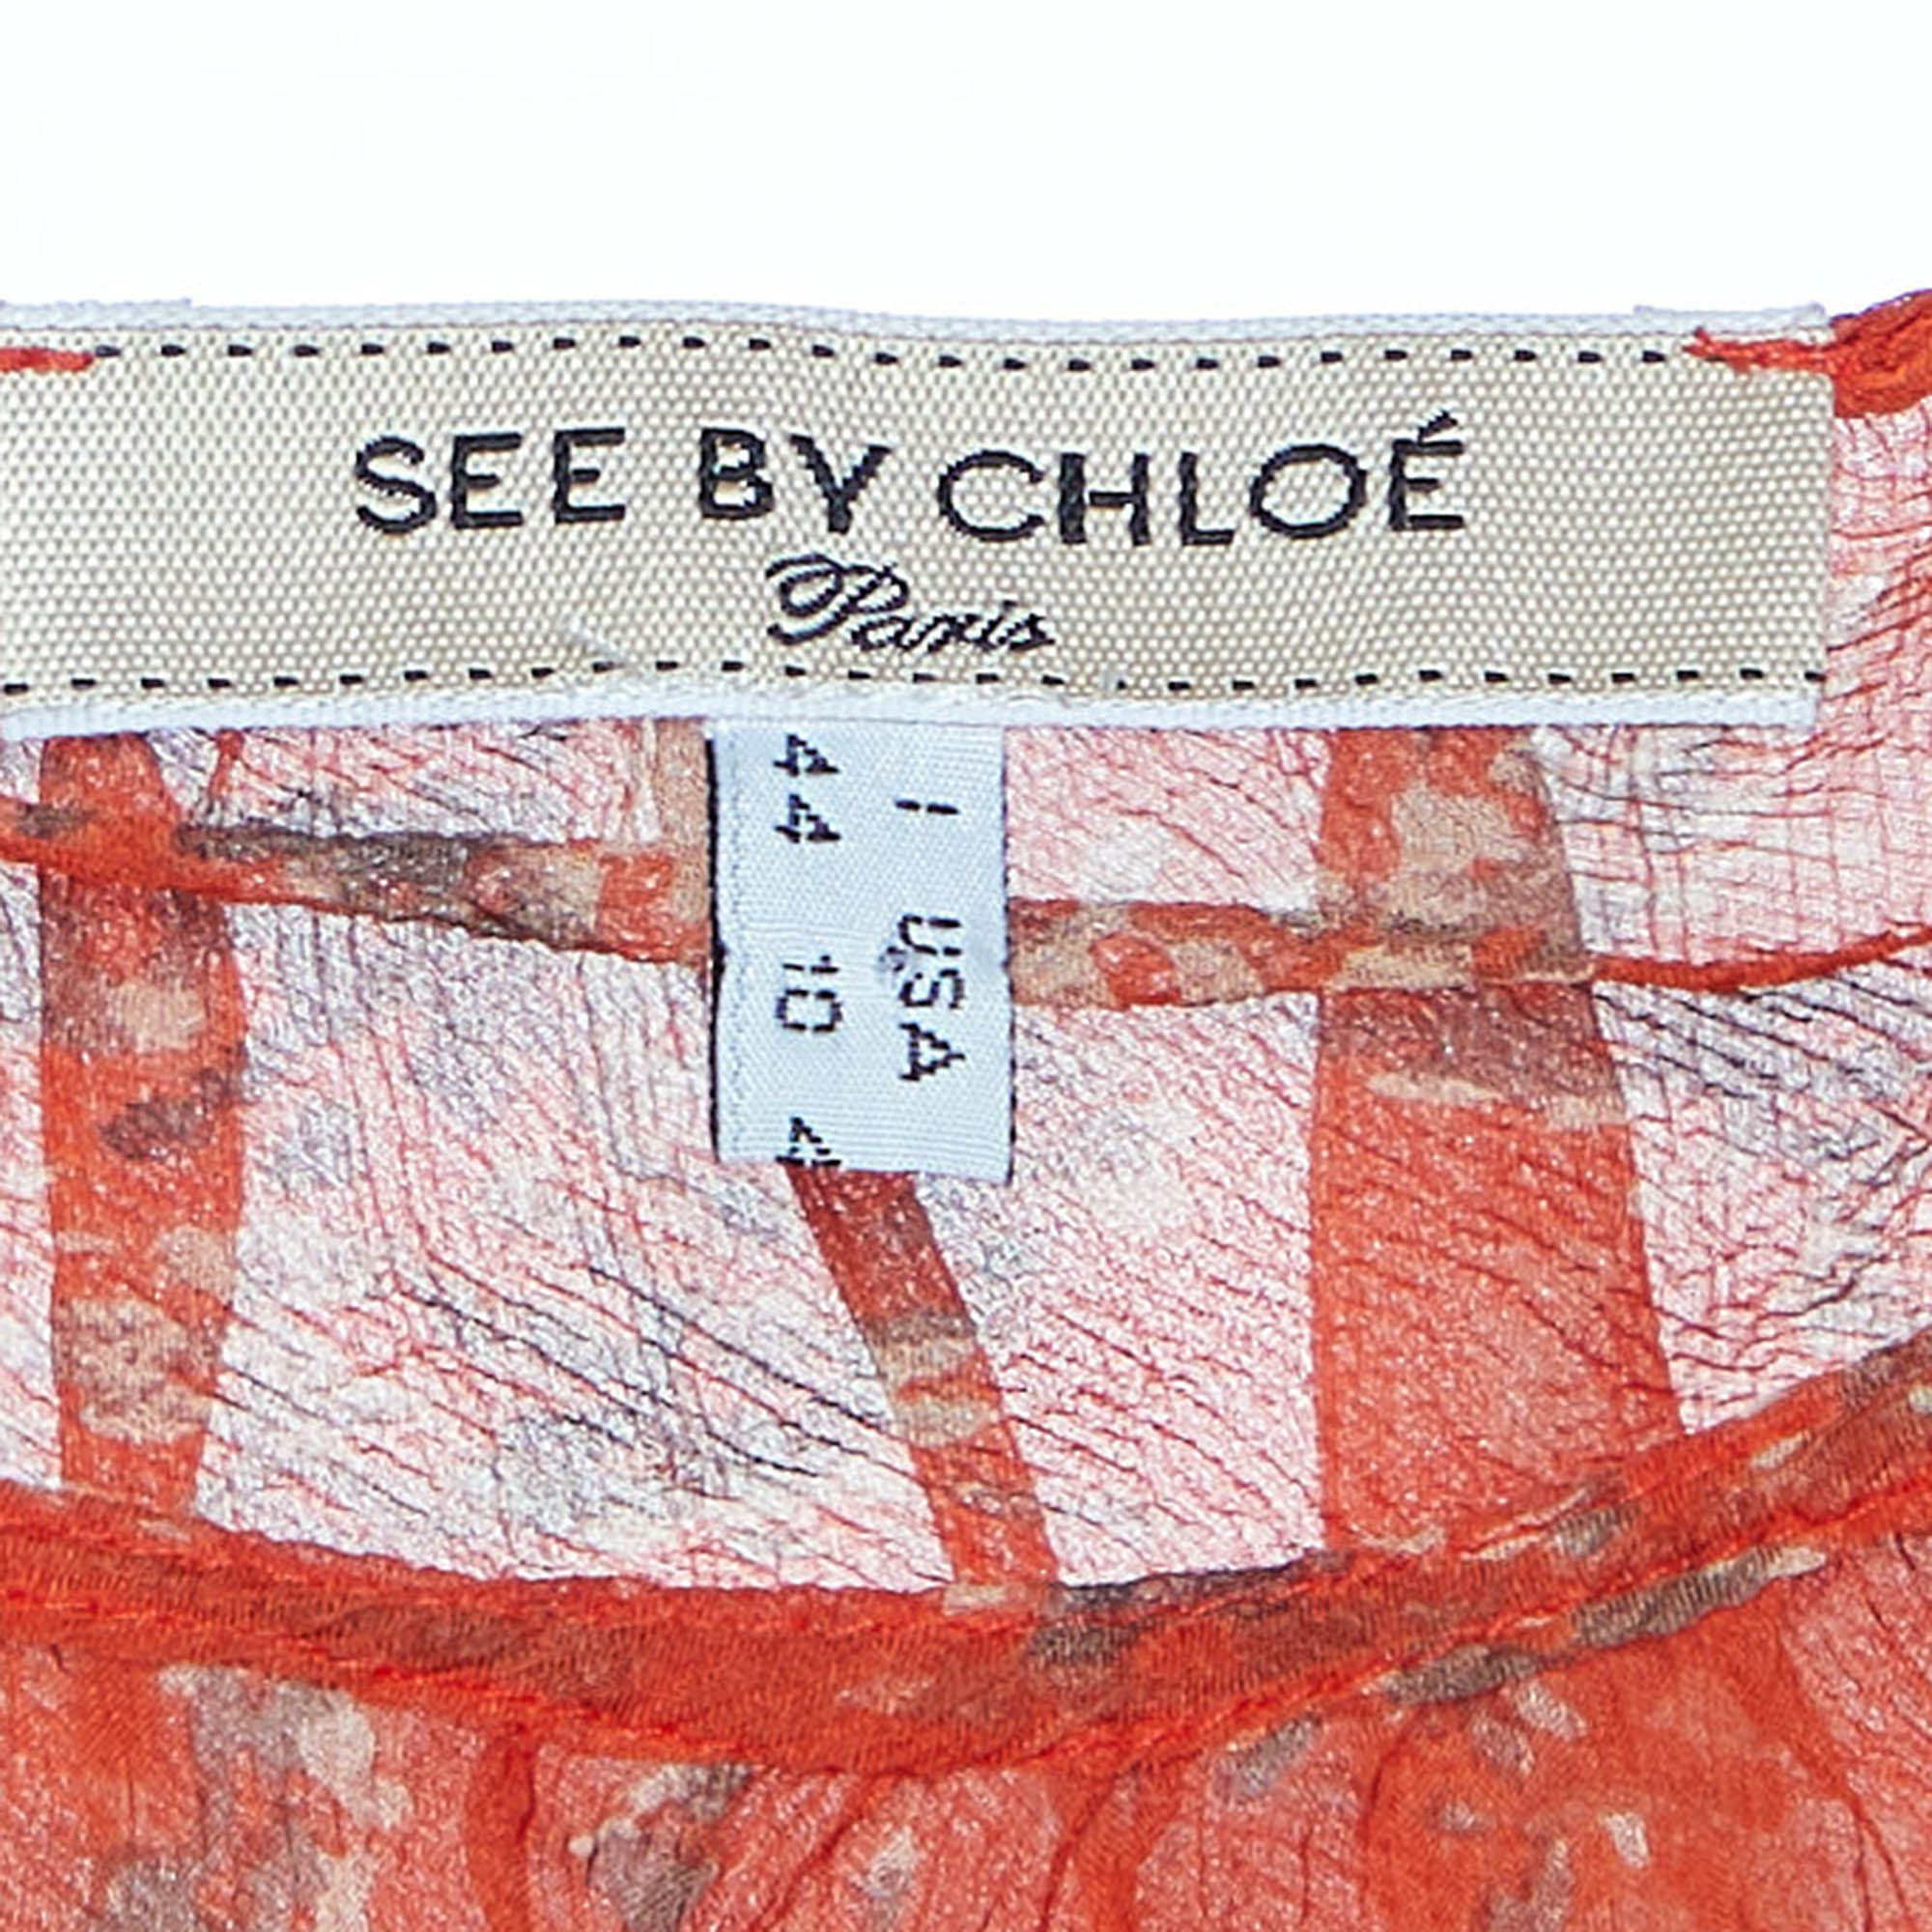 See By Chloe Orange Printed Silk Belted Ruffled Top M